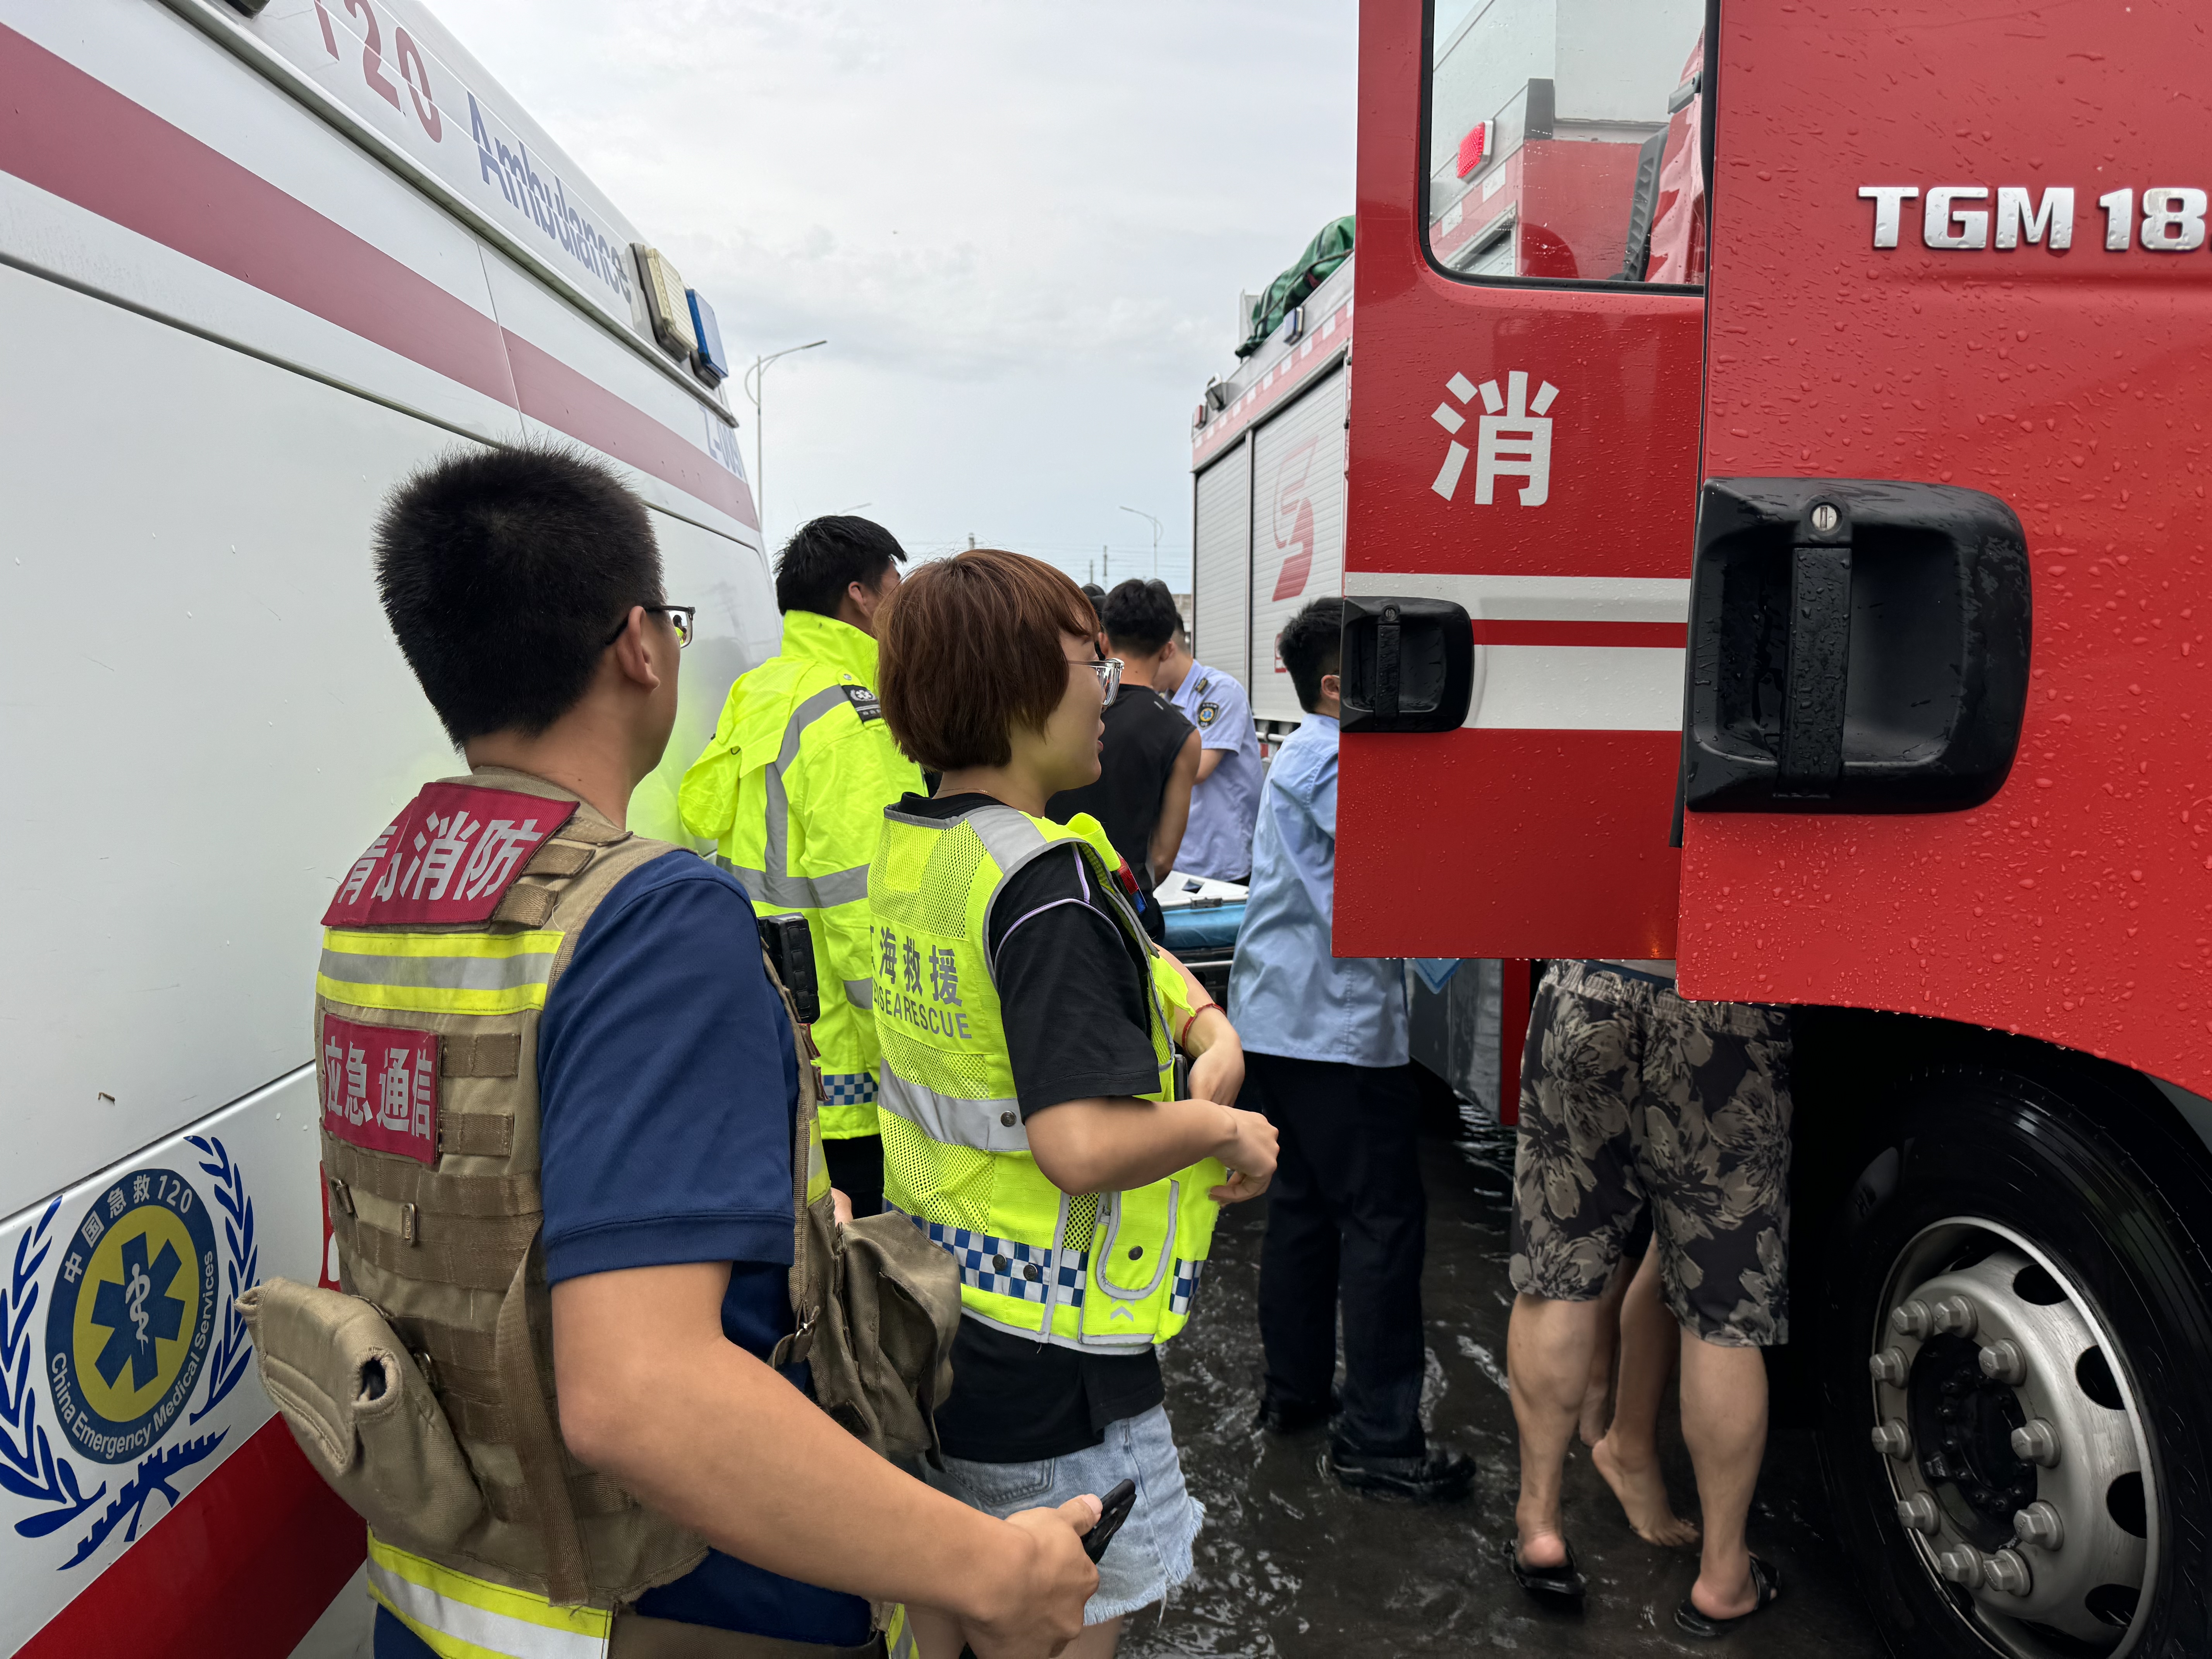 抢救重伤员，护送孕妇和异物卡鼻儿童  胶州市红海救援队40多名志愿者紧急接力